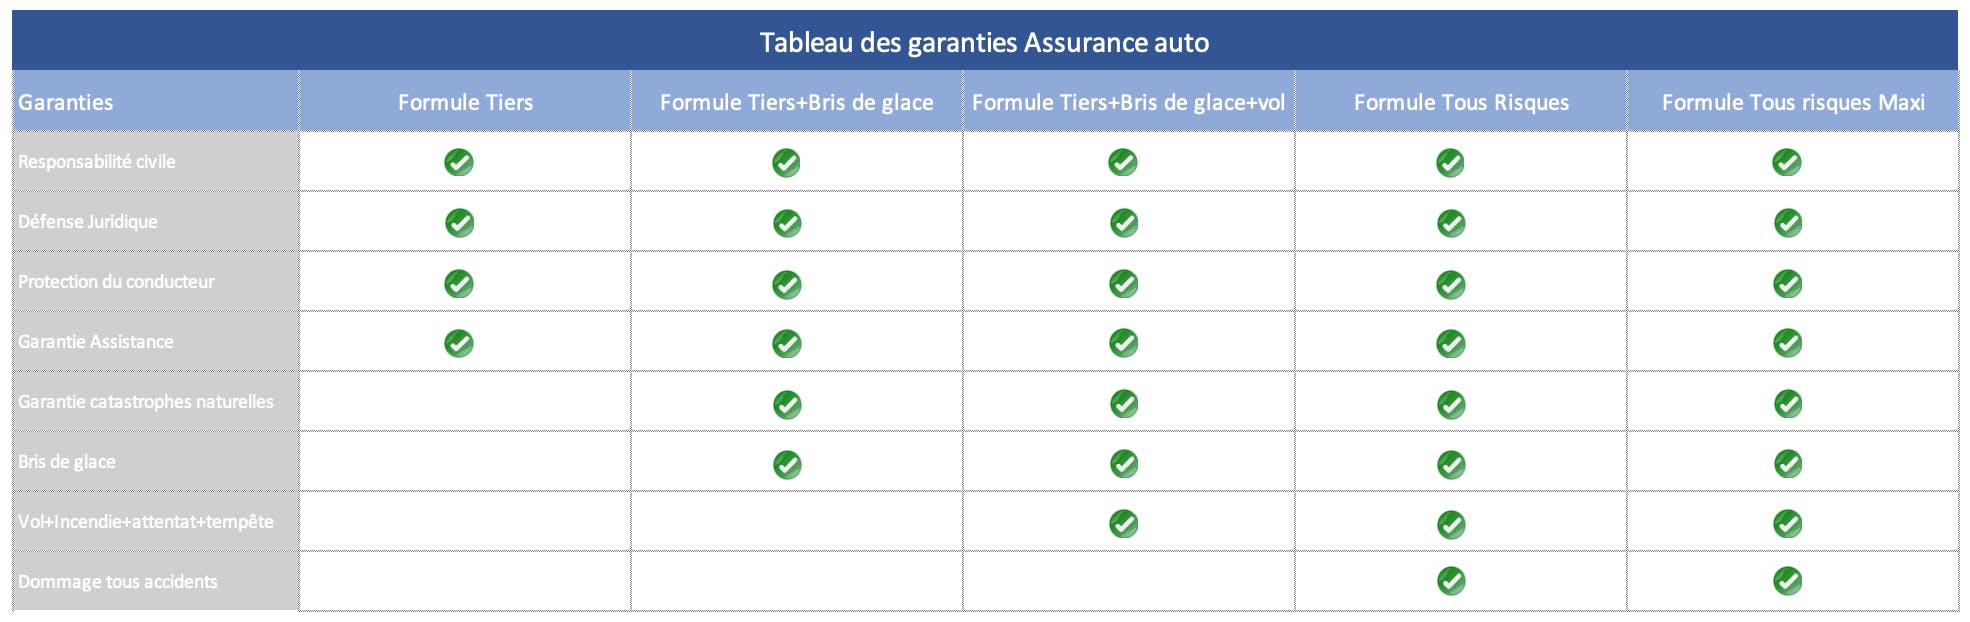 Tableau de comparaison des garanties assurance auto pour les formules Tiers, Tiers + Bris de glace, Tiers + Bris de Glace + Vol, Tous Risques et Tous Risques Maxi